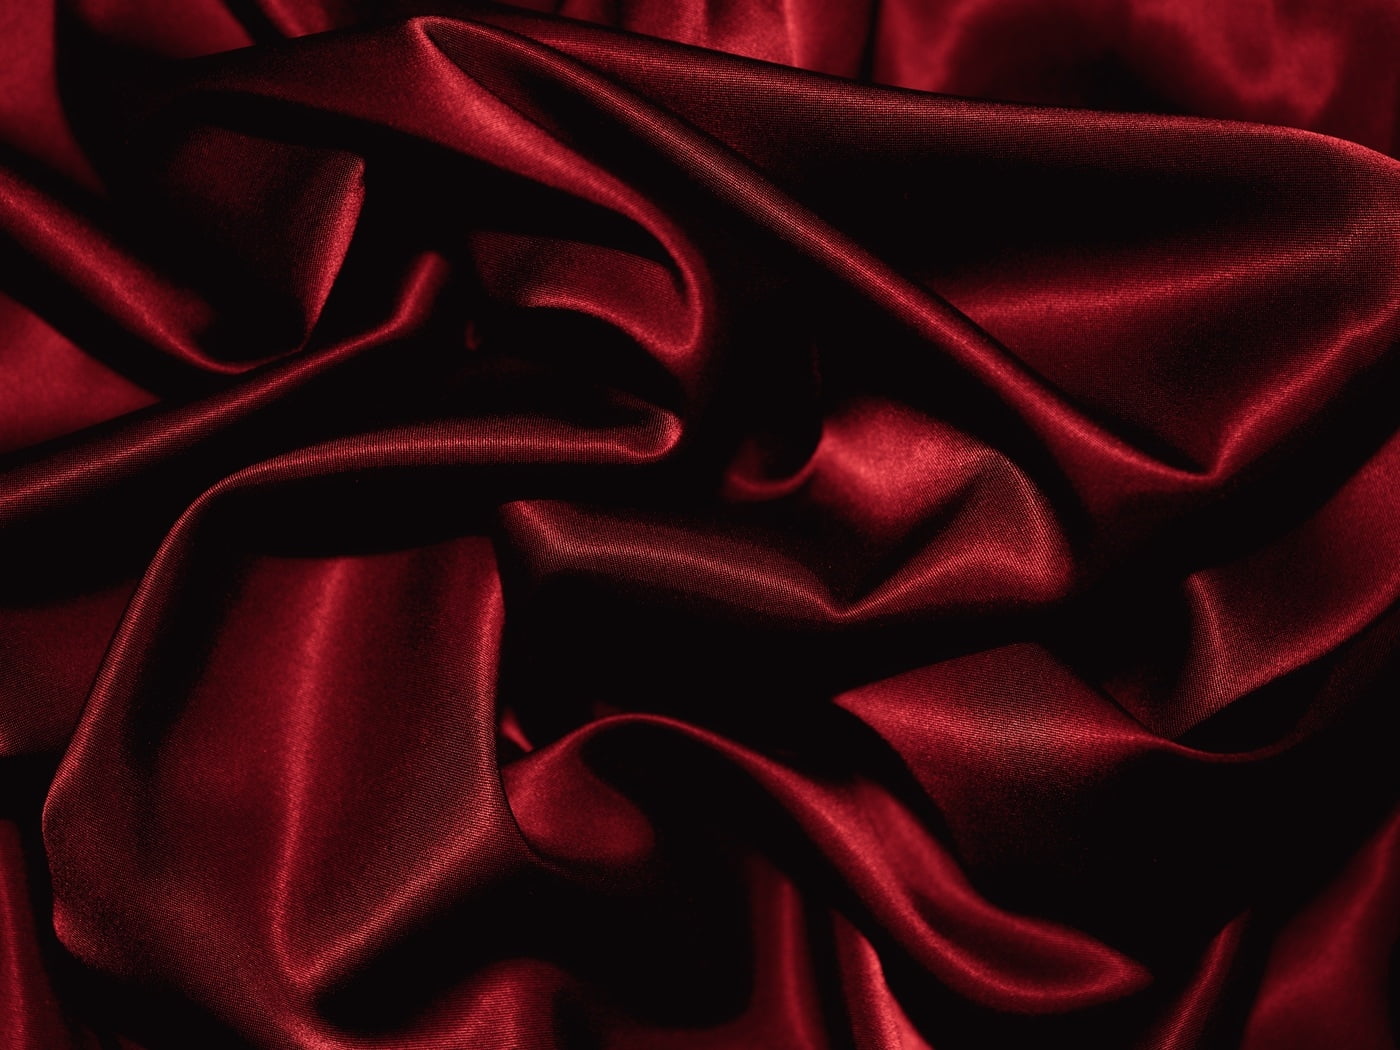 carta da parati in seta nera,rosso,seta,raso,tessile,velluto